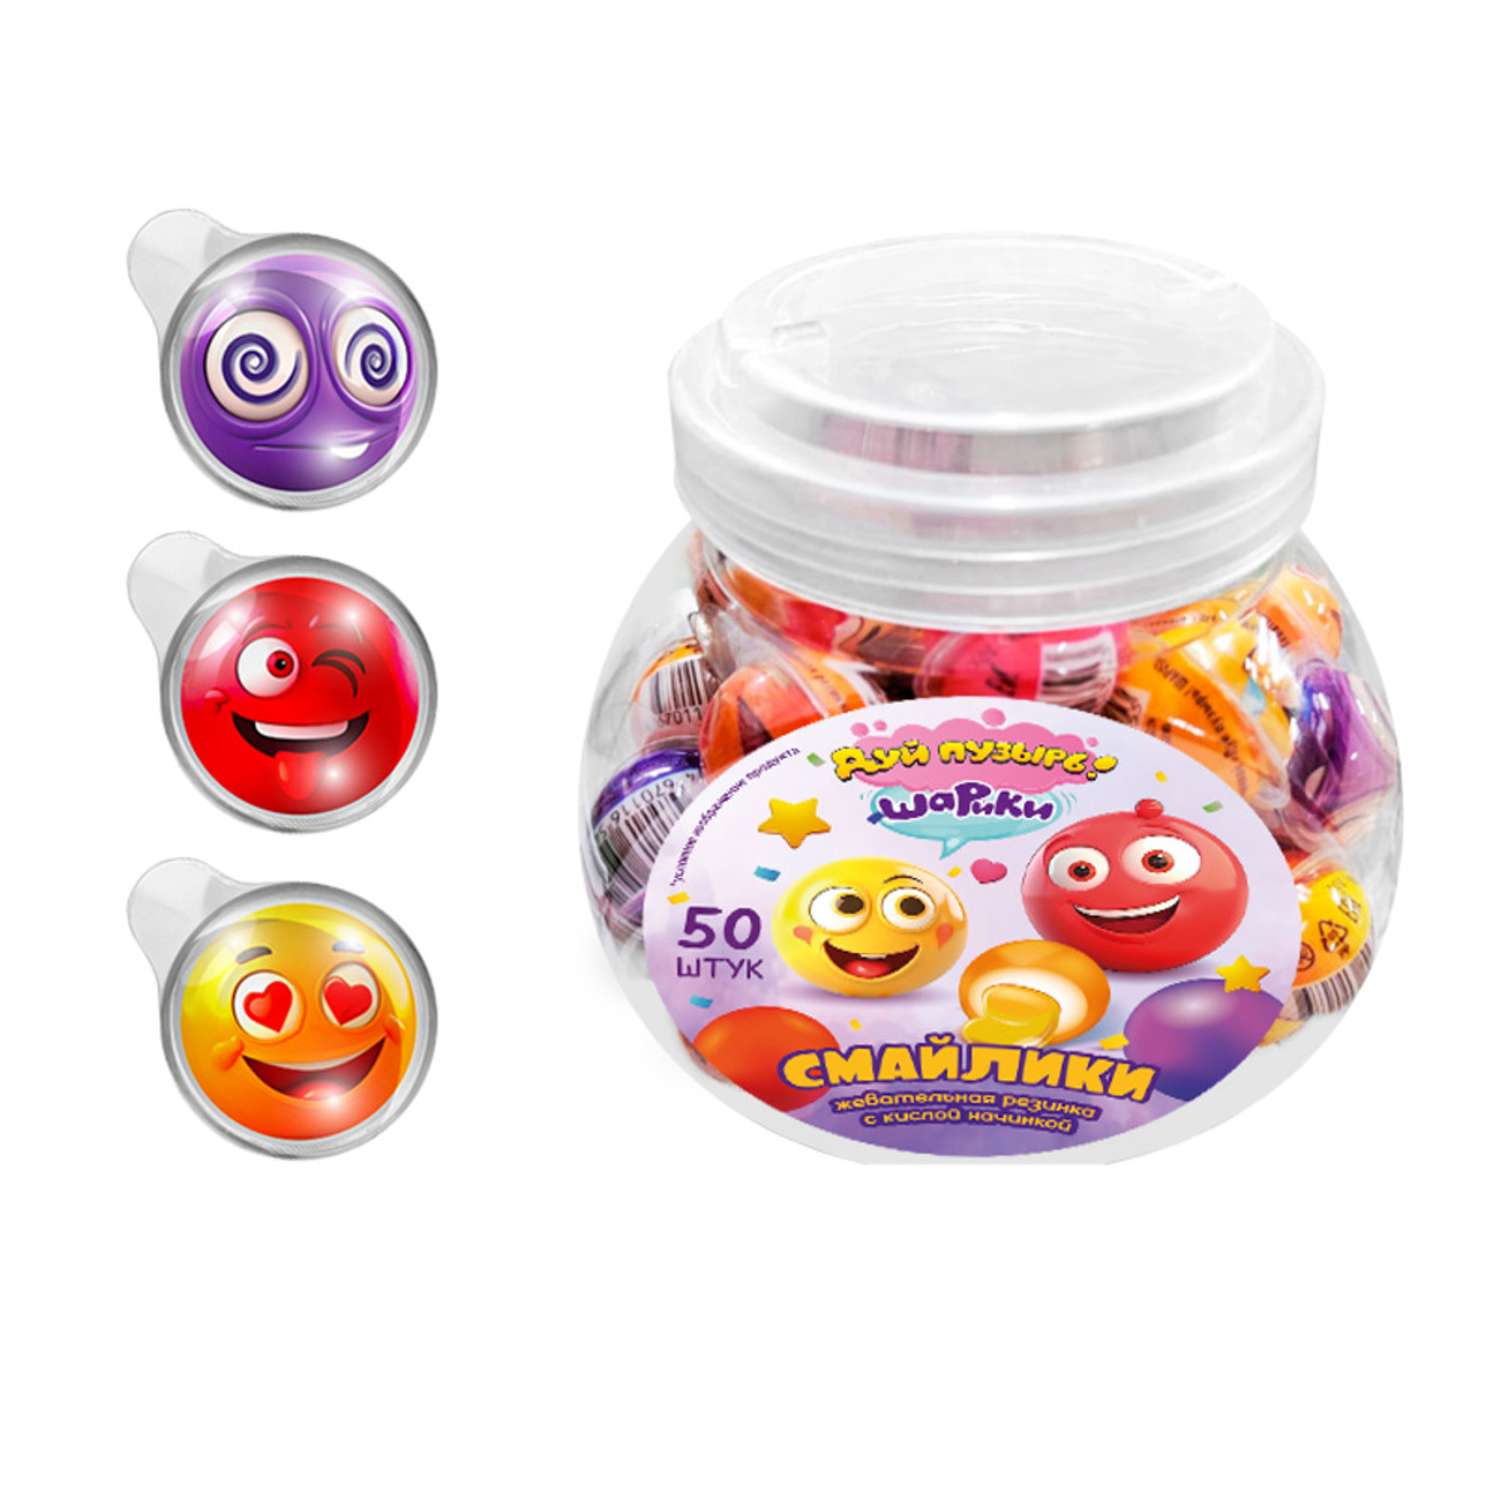 Жевательная резинка Fun Candy Lab Дуй пузырь шарики смайлики 50 шт по 10 гр - фото 1